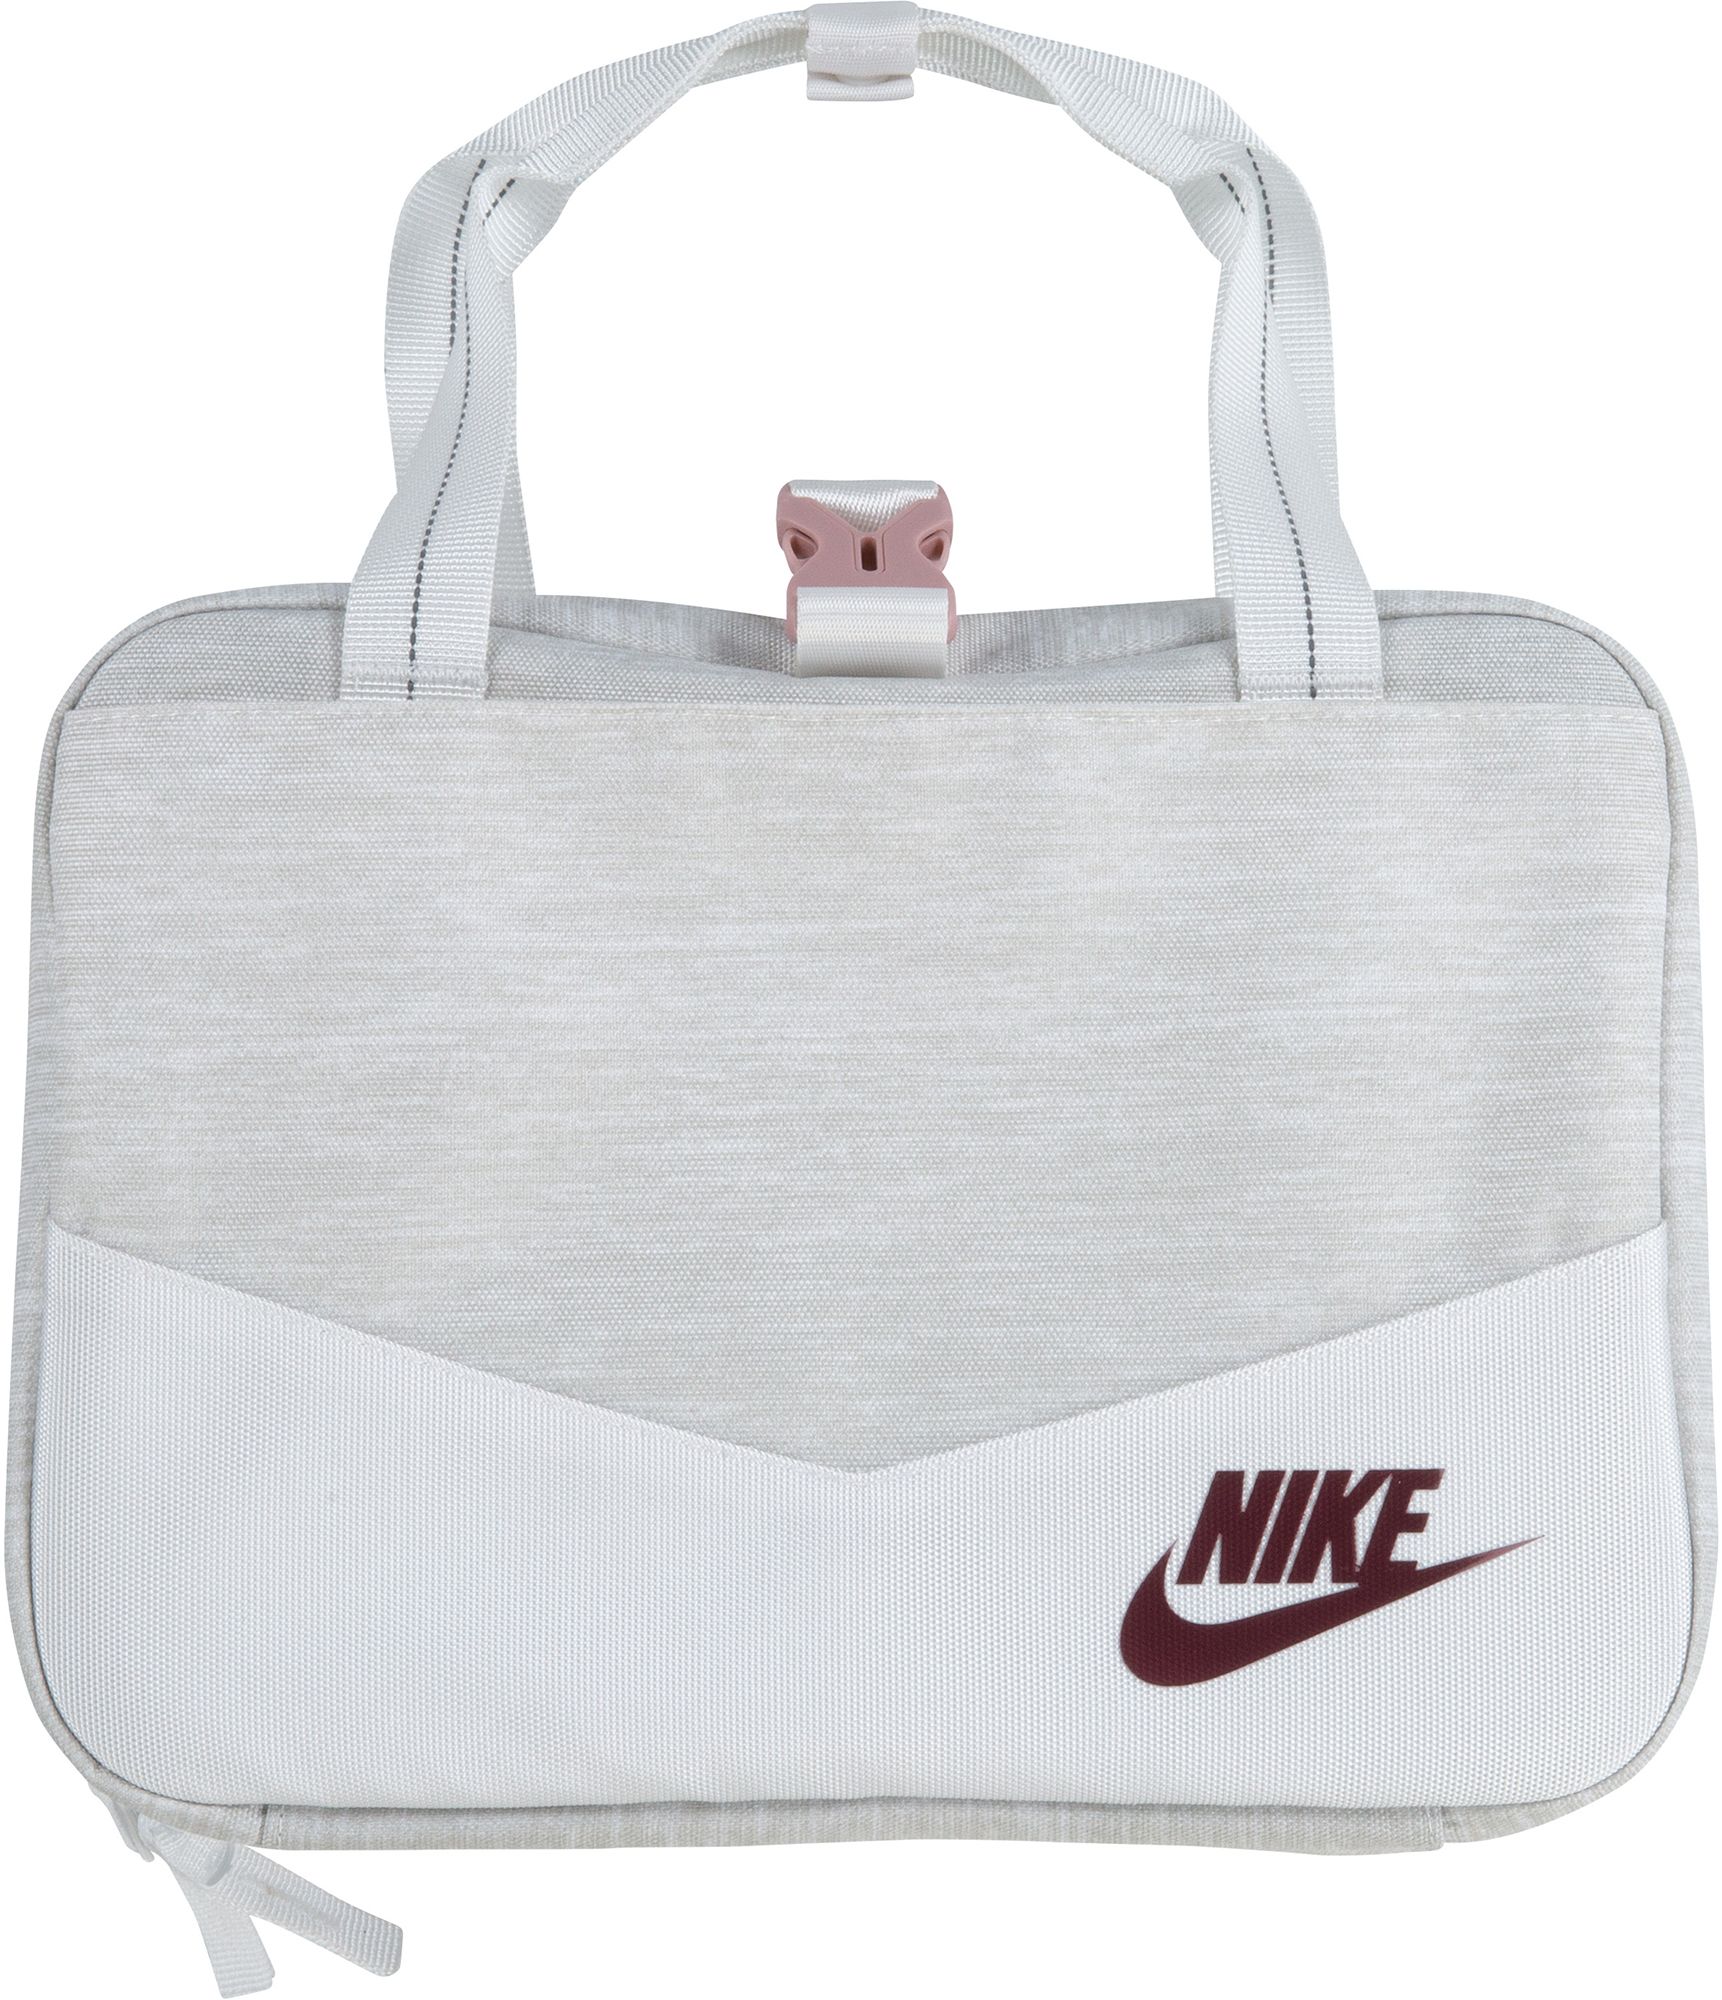 Omgaan met atomair kromme Nike / Futura Square Lunch Bag